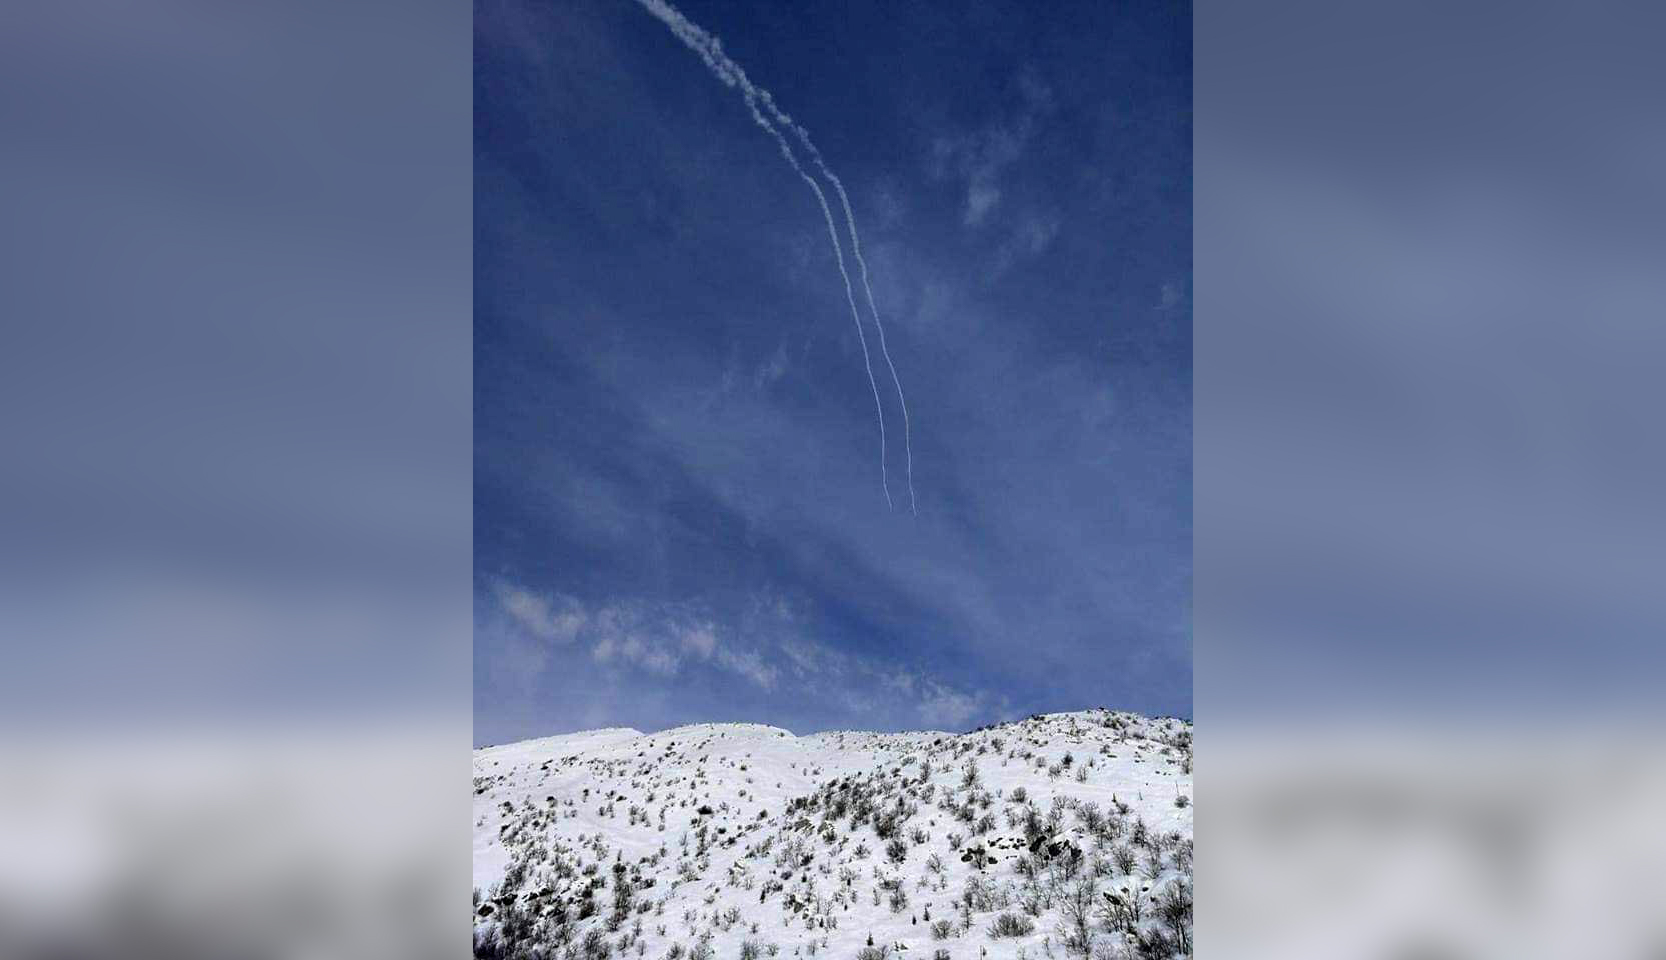 يديعوت و معاريف: الصاروخ السوري الذي اطلق نحو الجولان بعيد المدى وأثار ذعرا وليس صاروخا عادياً!!